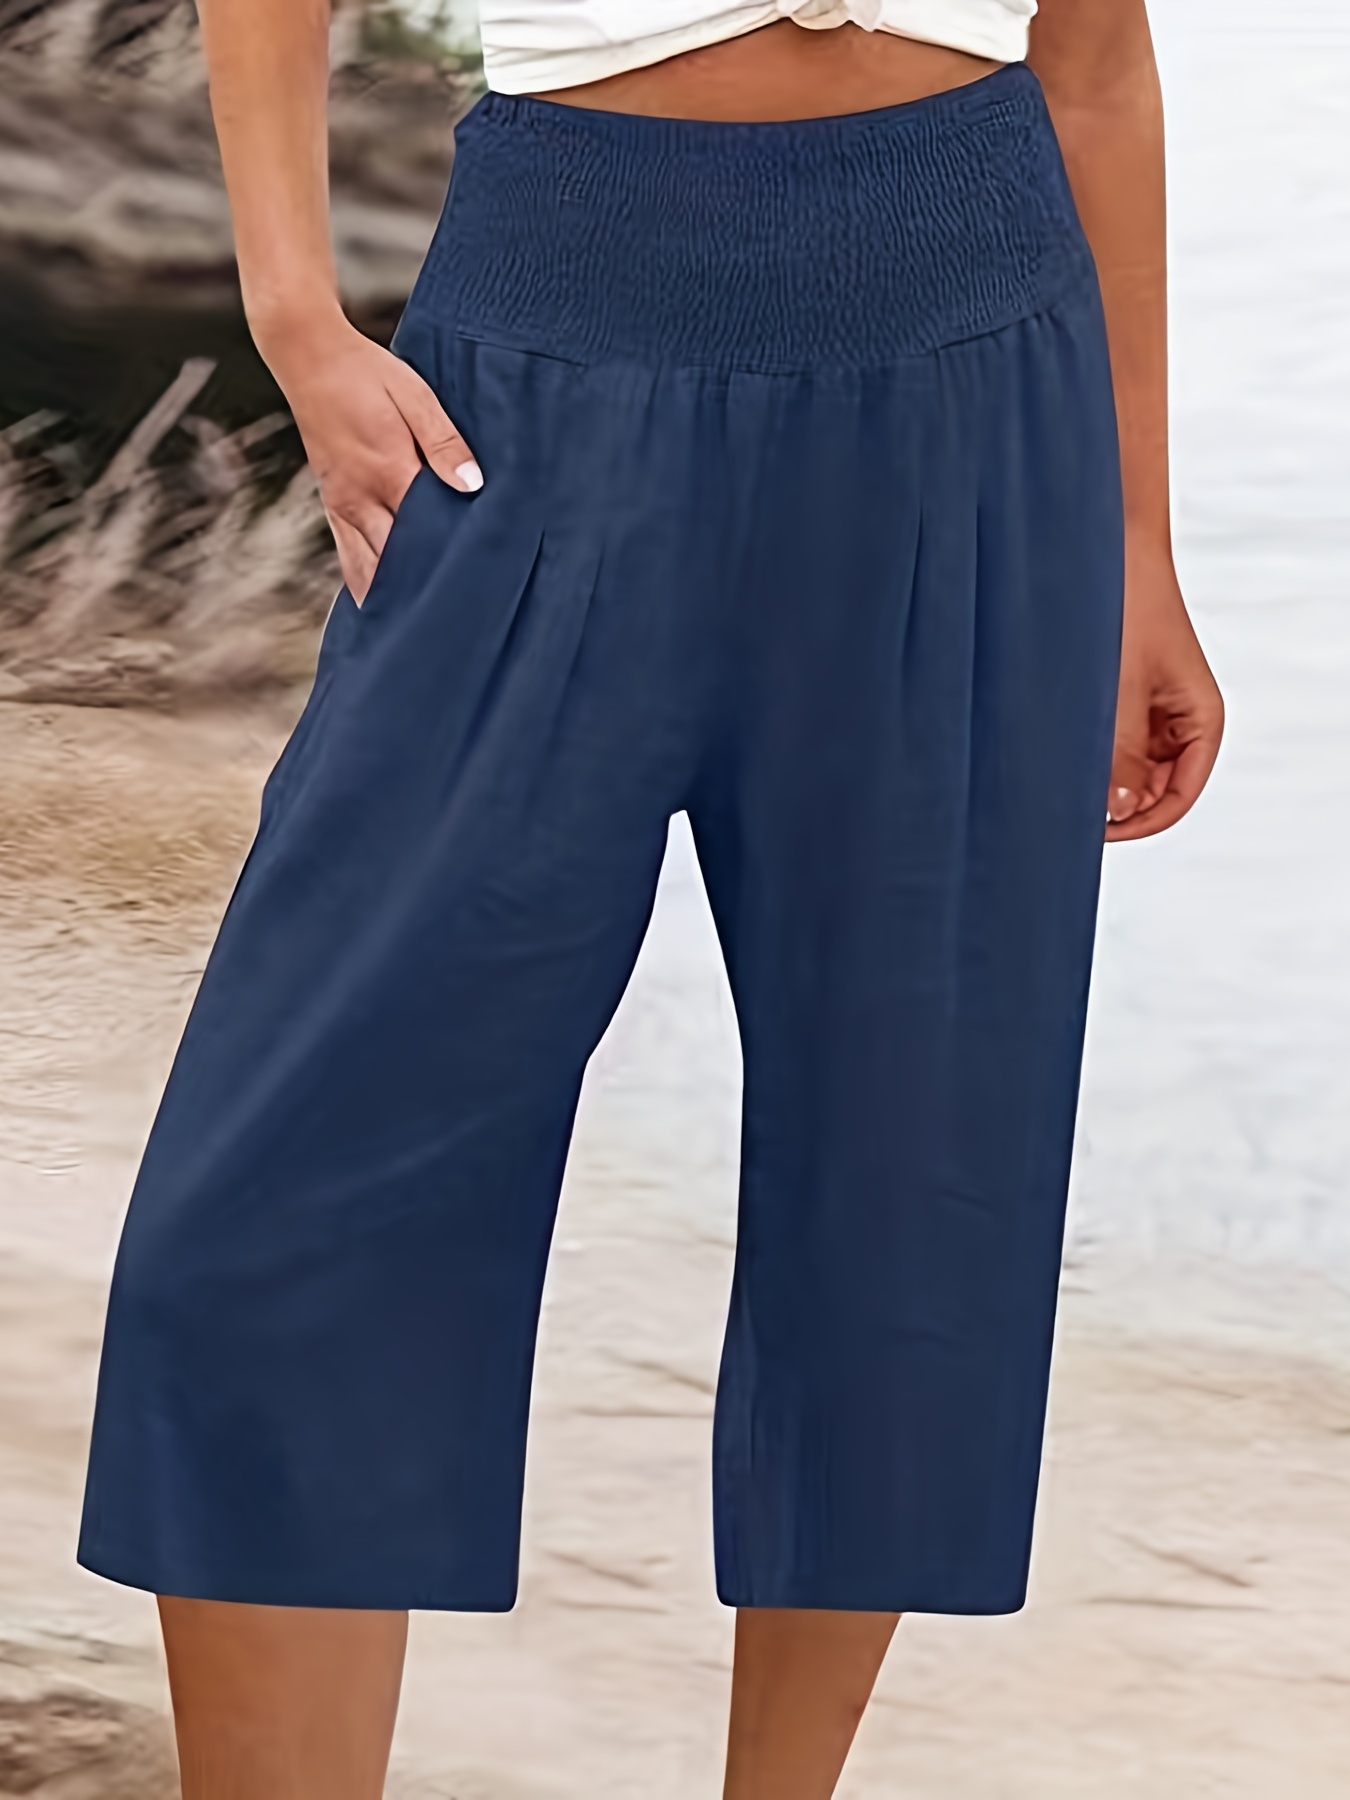 Pantalones Capri Sólidos Con Cordón, Pantalones Casuales Versátiles Para  Uso Diario, Ropa De Mujer